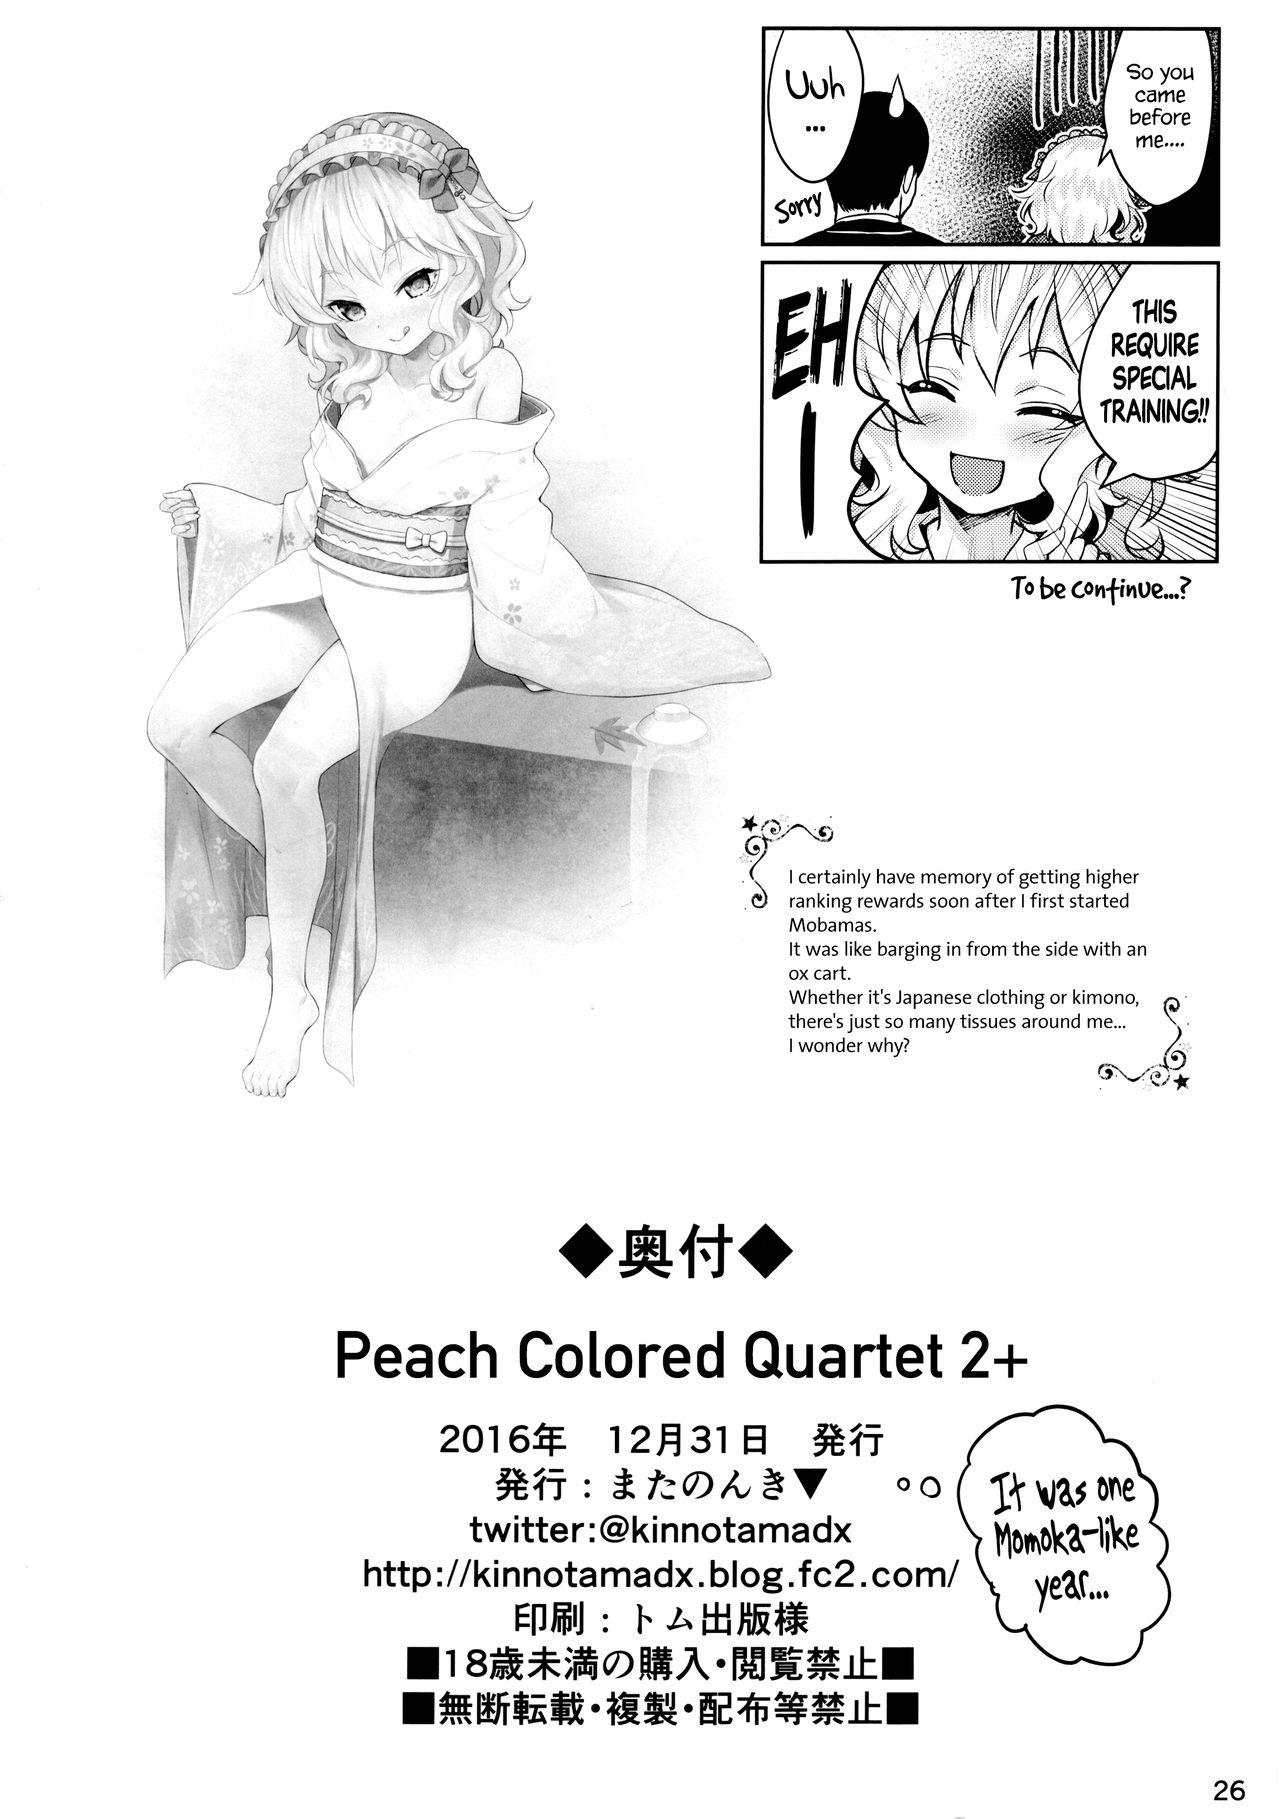 Momoiro Quartet 2+ | Peach Colored Quartet 2+ 24